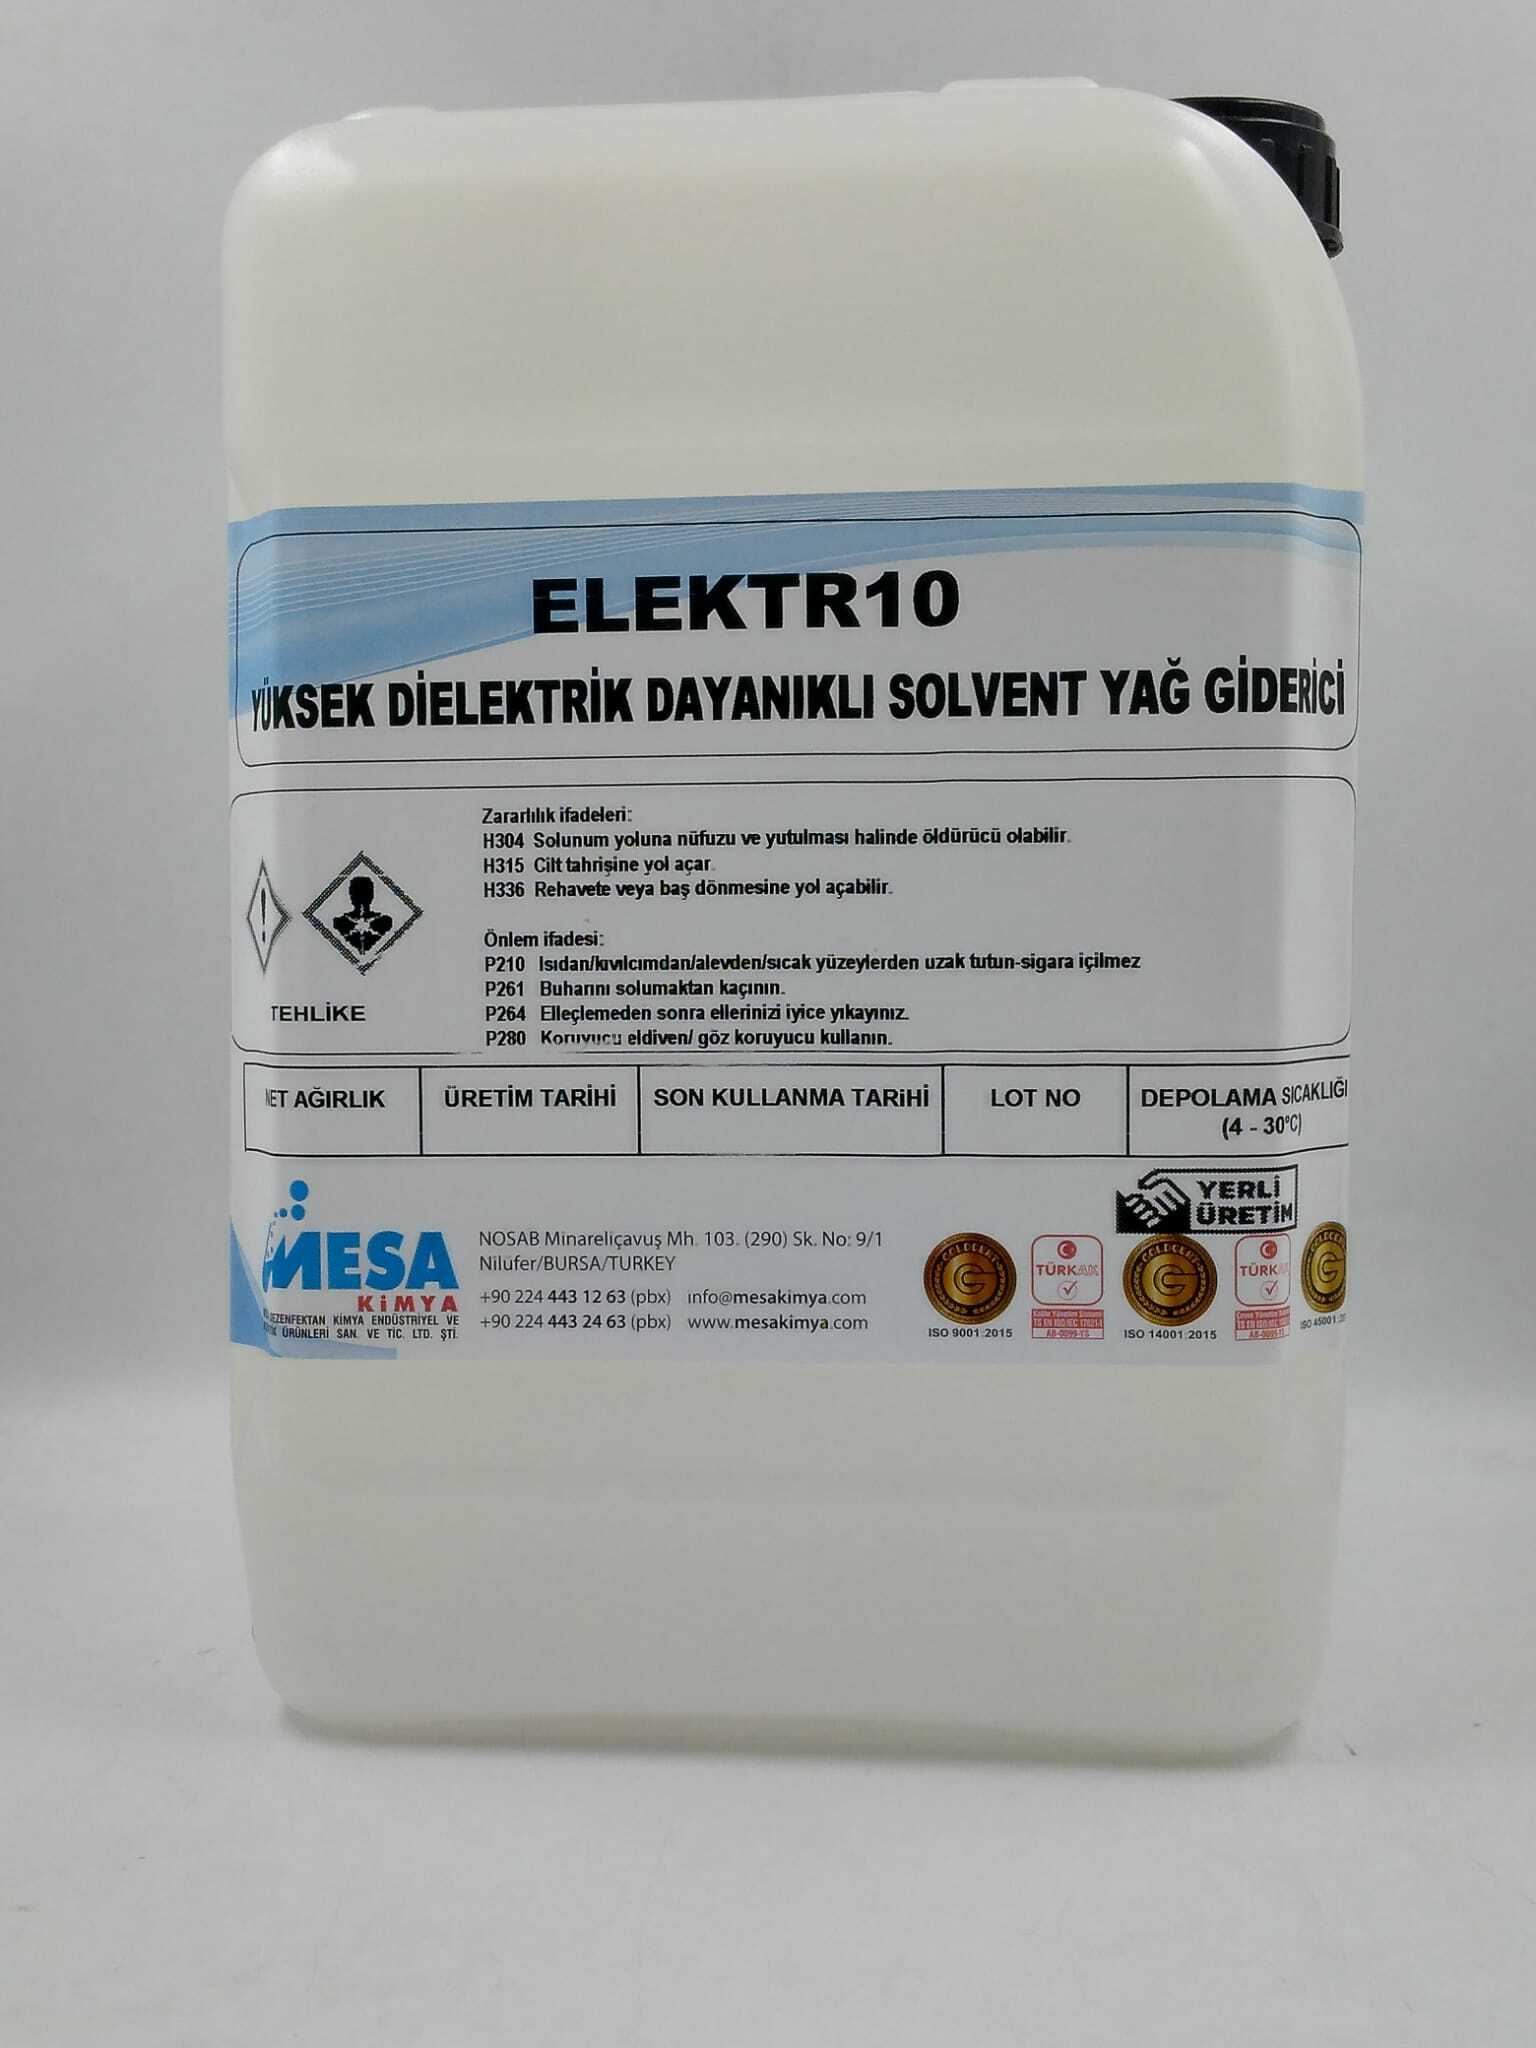 Yüksek dielektrik solvent yağ giderici ELEKTR10